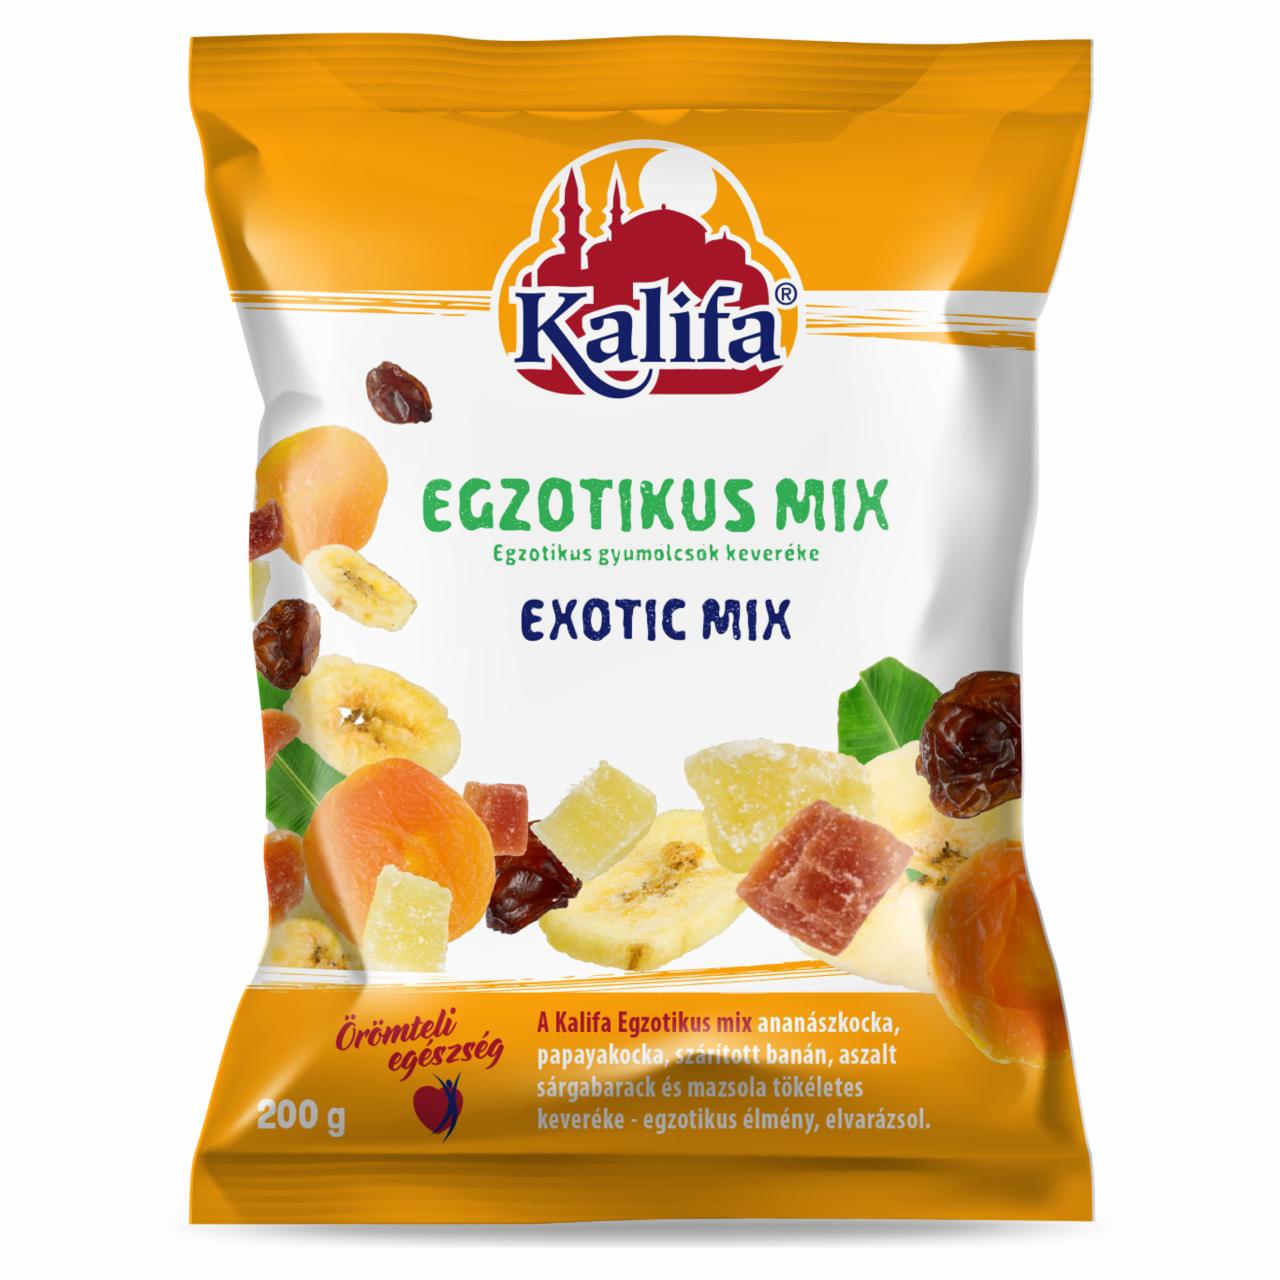 Képek - Kalifa egzotikus mix 200 g